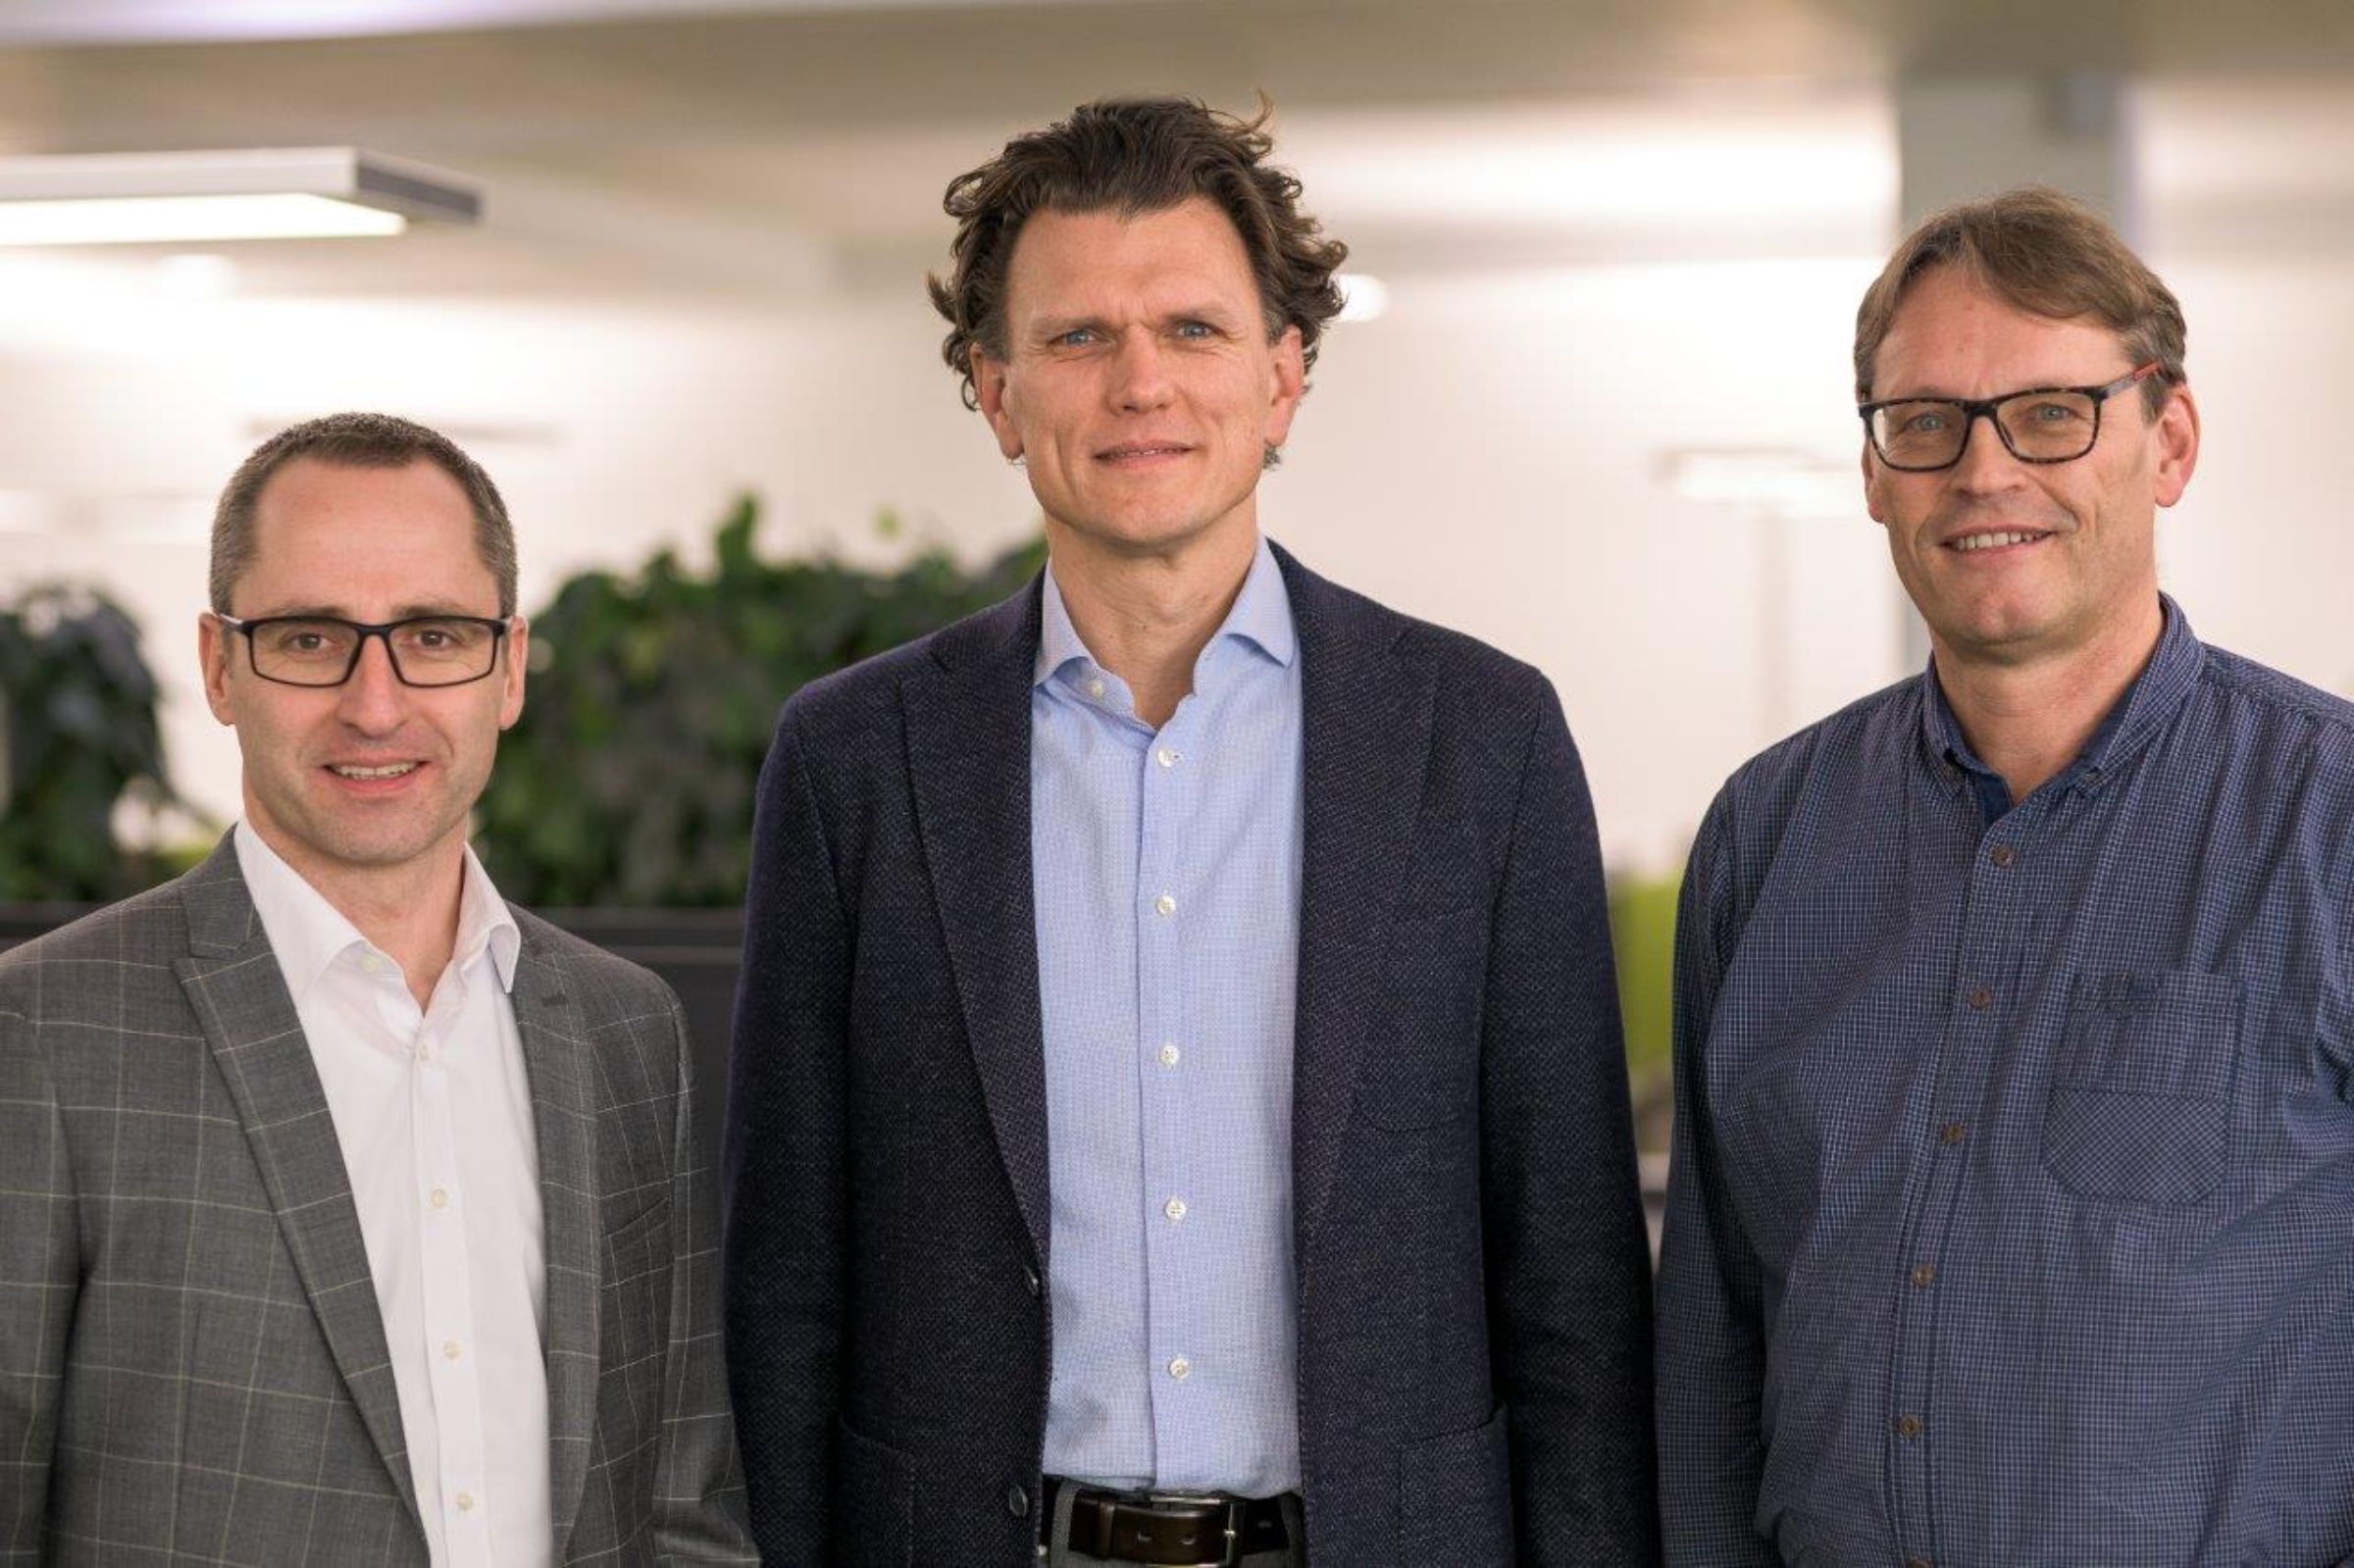 Start JobRad Leasing | Matthias Schneider, Holger Tumat und Roland Potthast